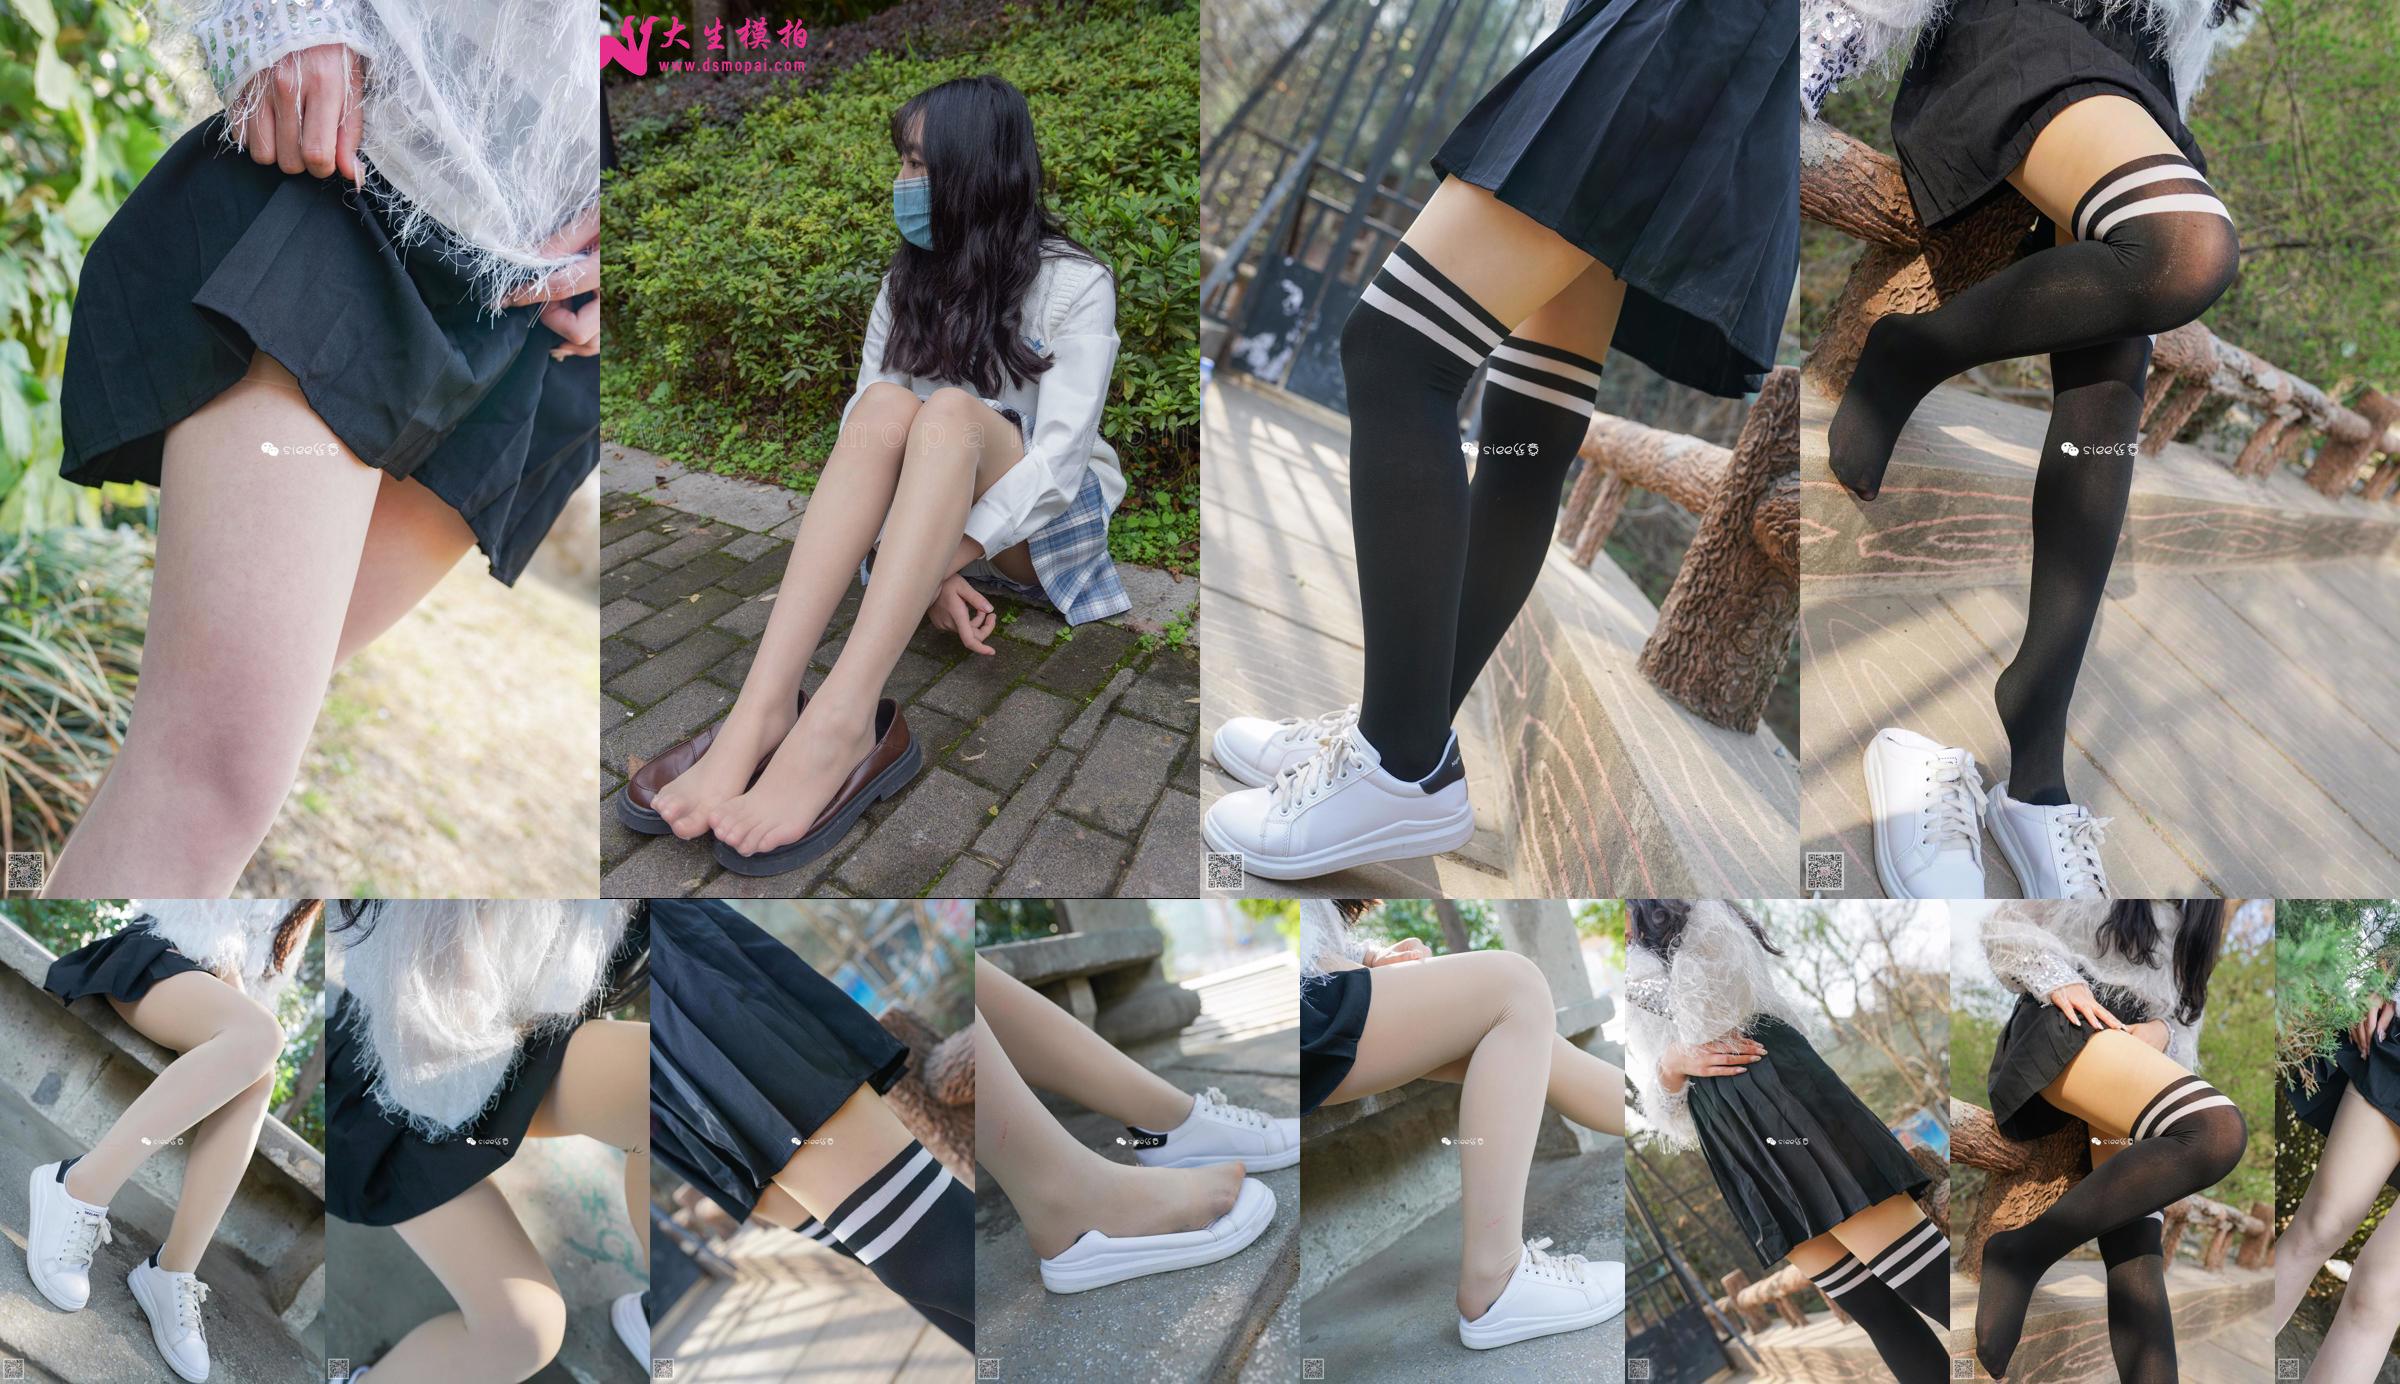 [丝意SIEE] No.287 Satsuki "Sentimental Little White Shoes" No.dbfae7 Page 8